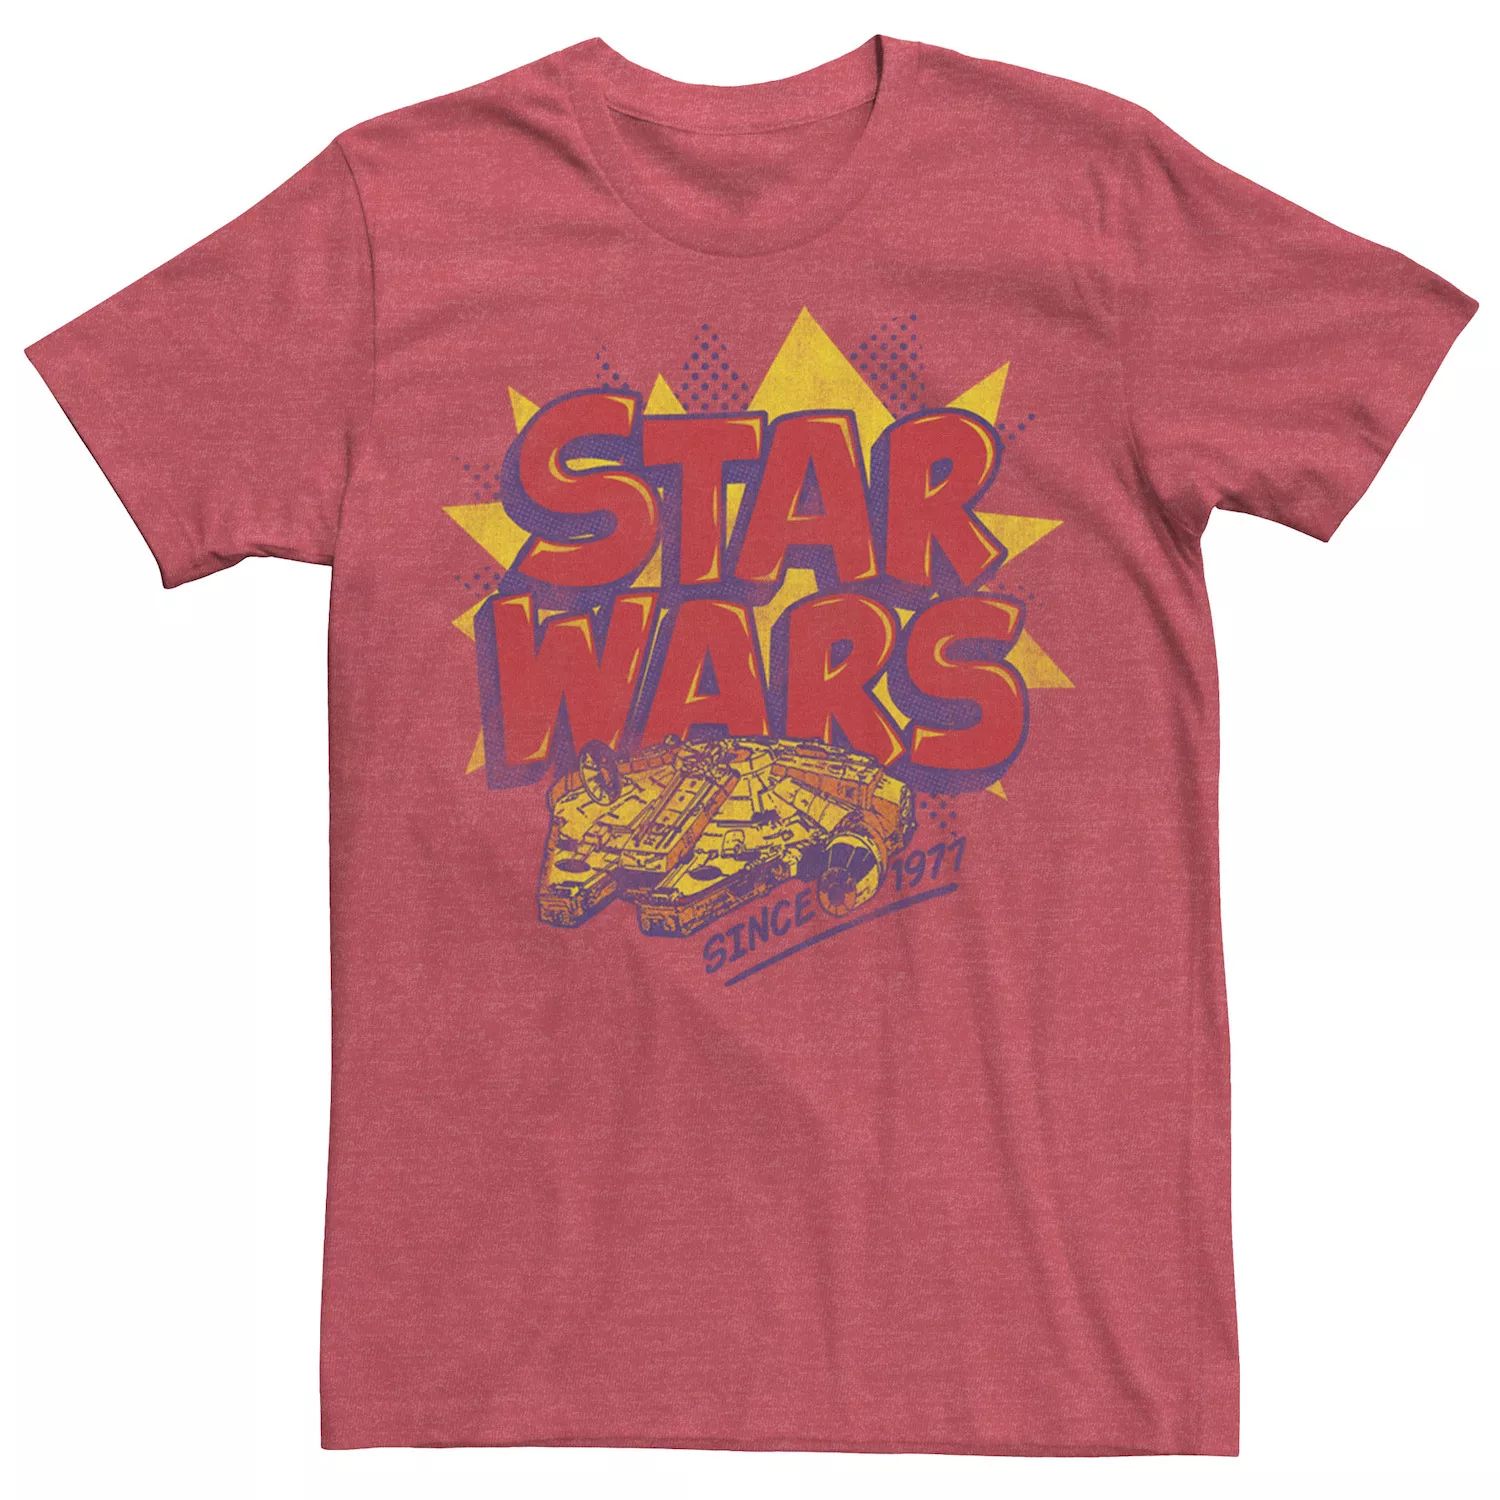 Мужская футболка с логотипом комиксов «Звездные войны: Сокол тысячелетия» Star Wars мужская футболка с рисунком сокол тысячелетия по звездным войнам star wars